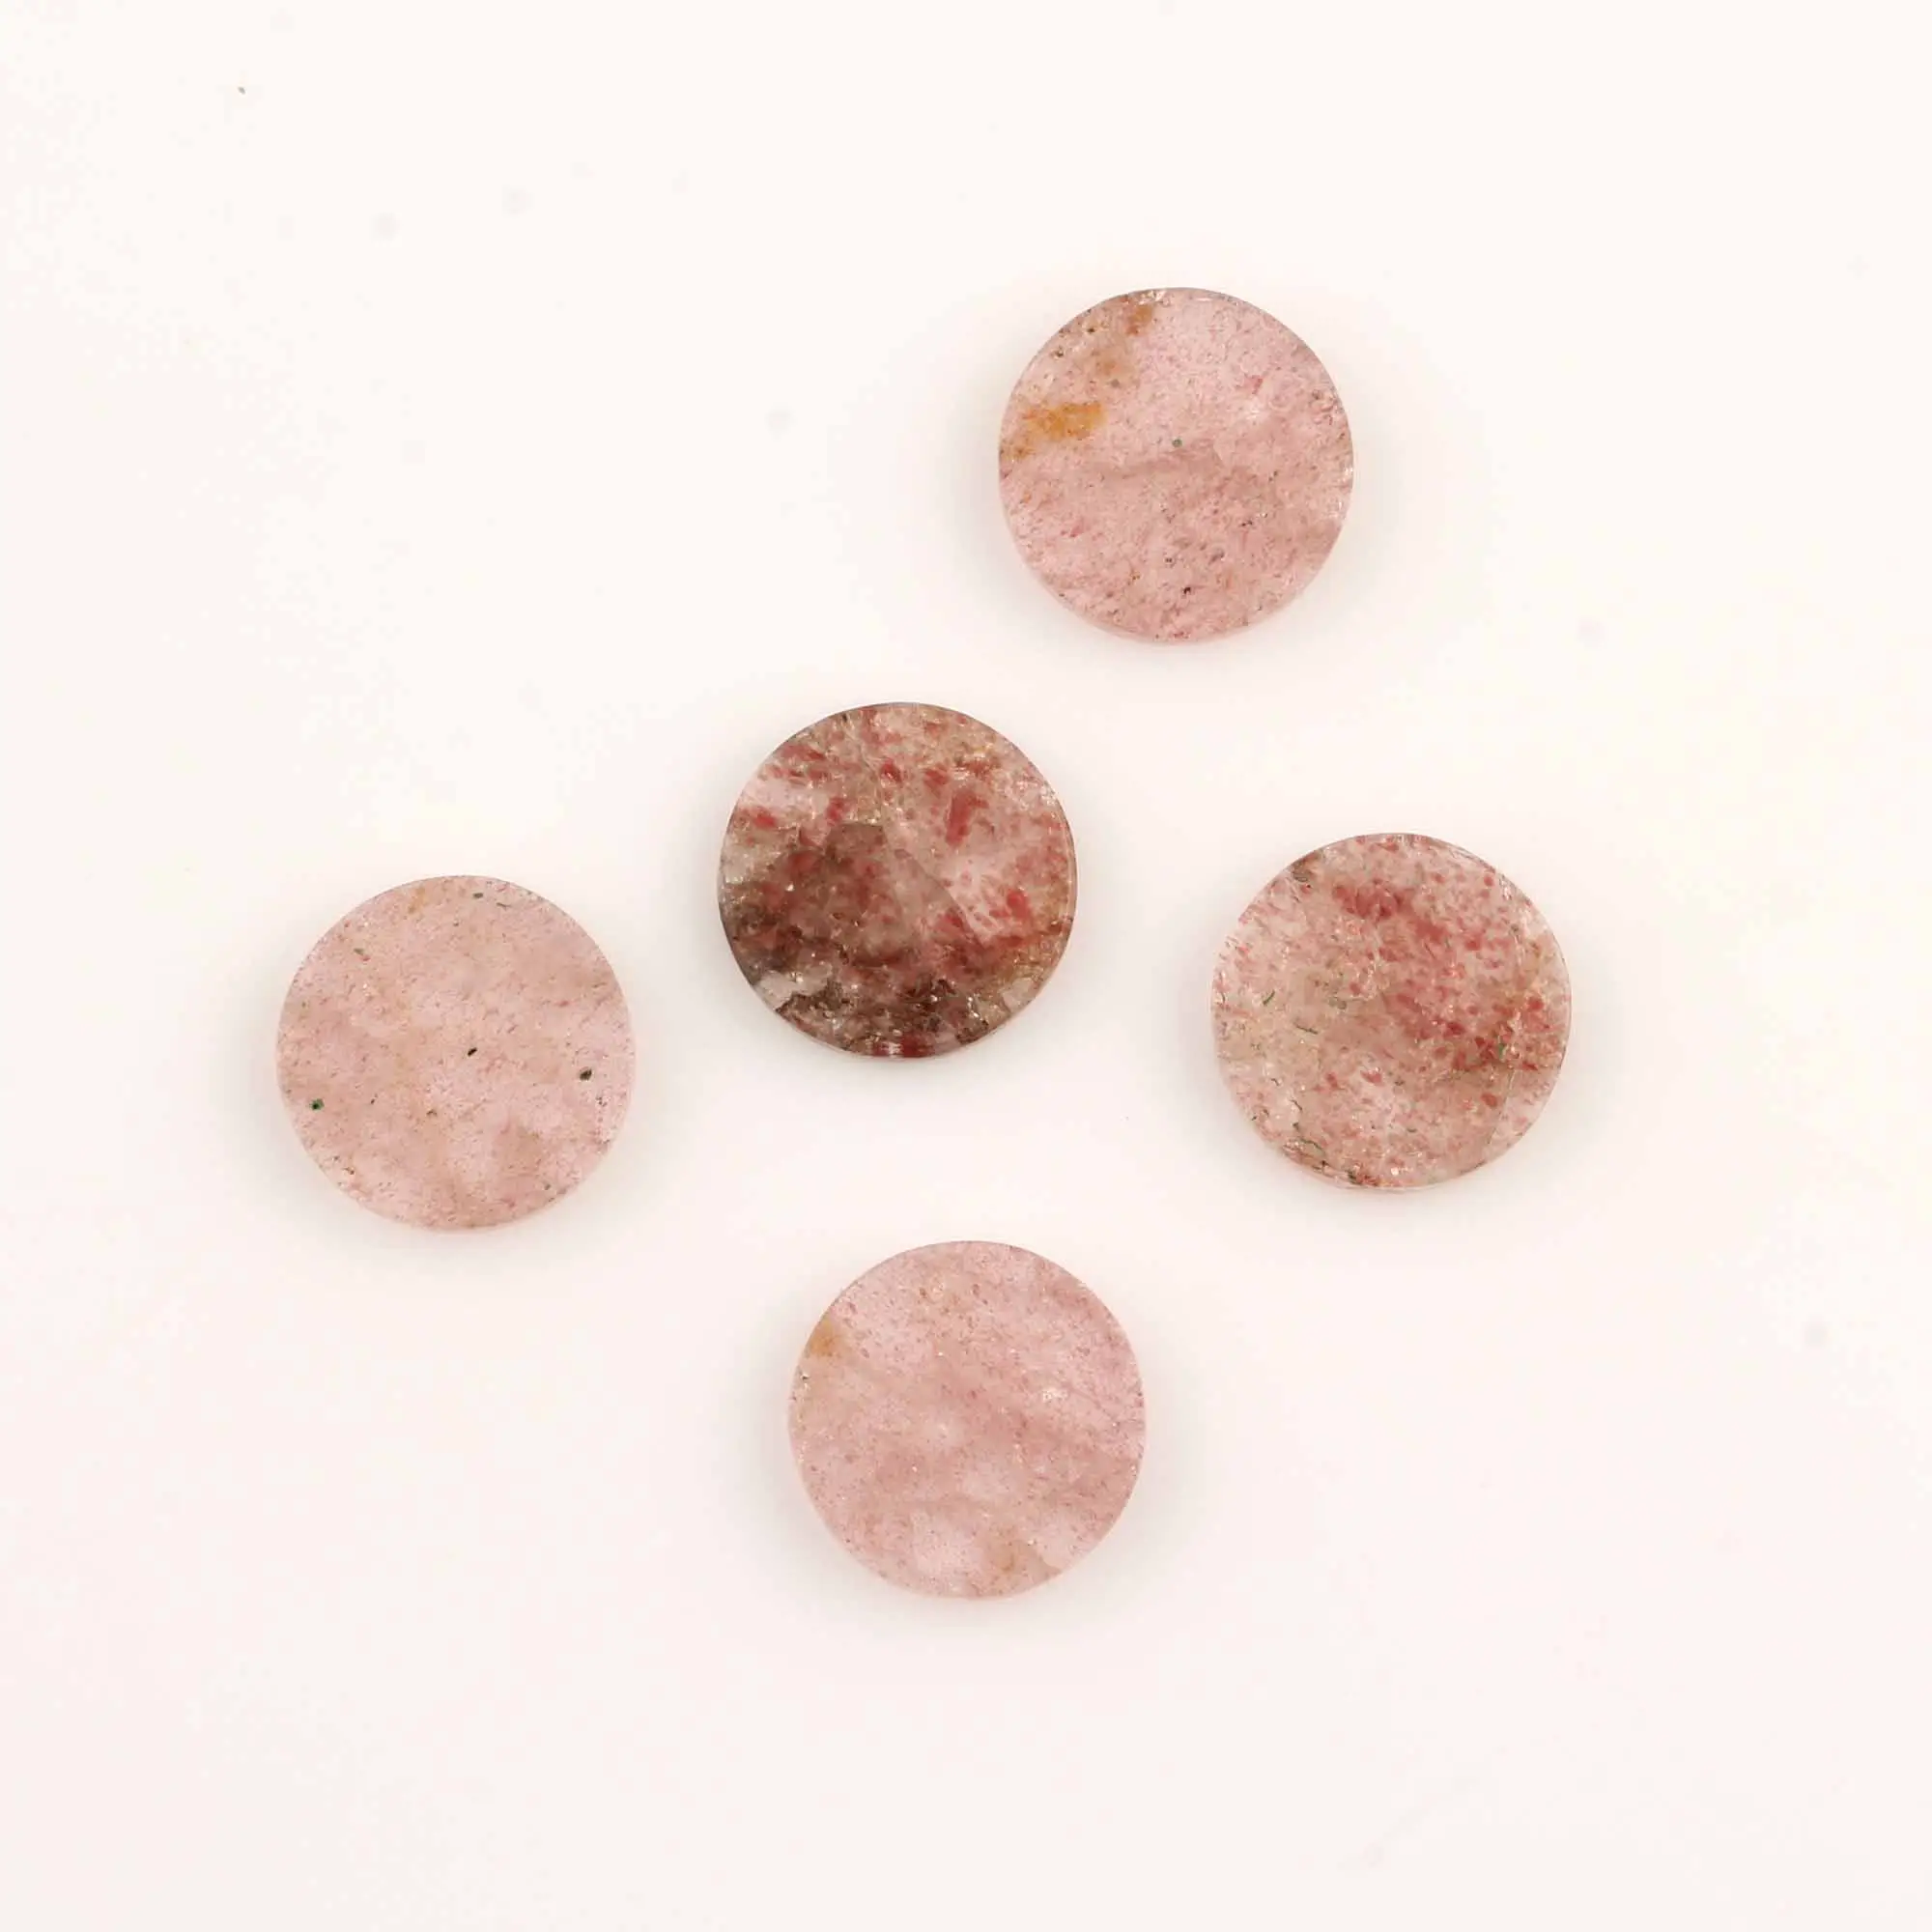 보석을 만들기위한 천연 핑크 딸기 플랫 보석 도매 12mm 플랫 동전 둥근 모양 핑크 느슨한 보석